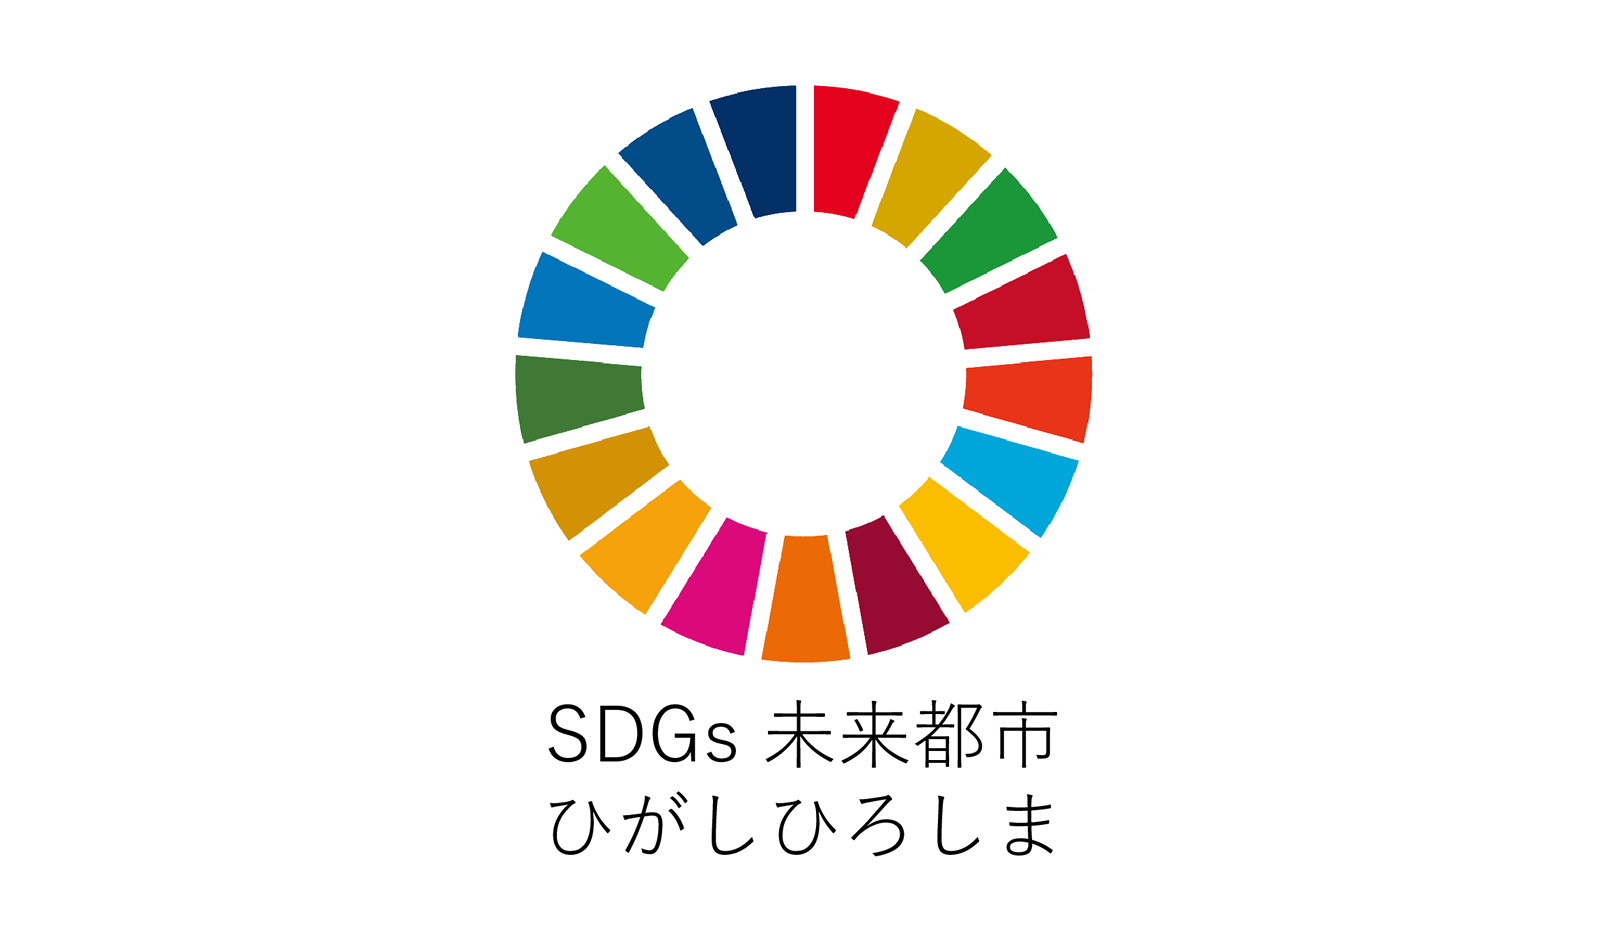 SDGs未来都市東広島推進パートナーに認定